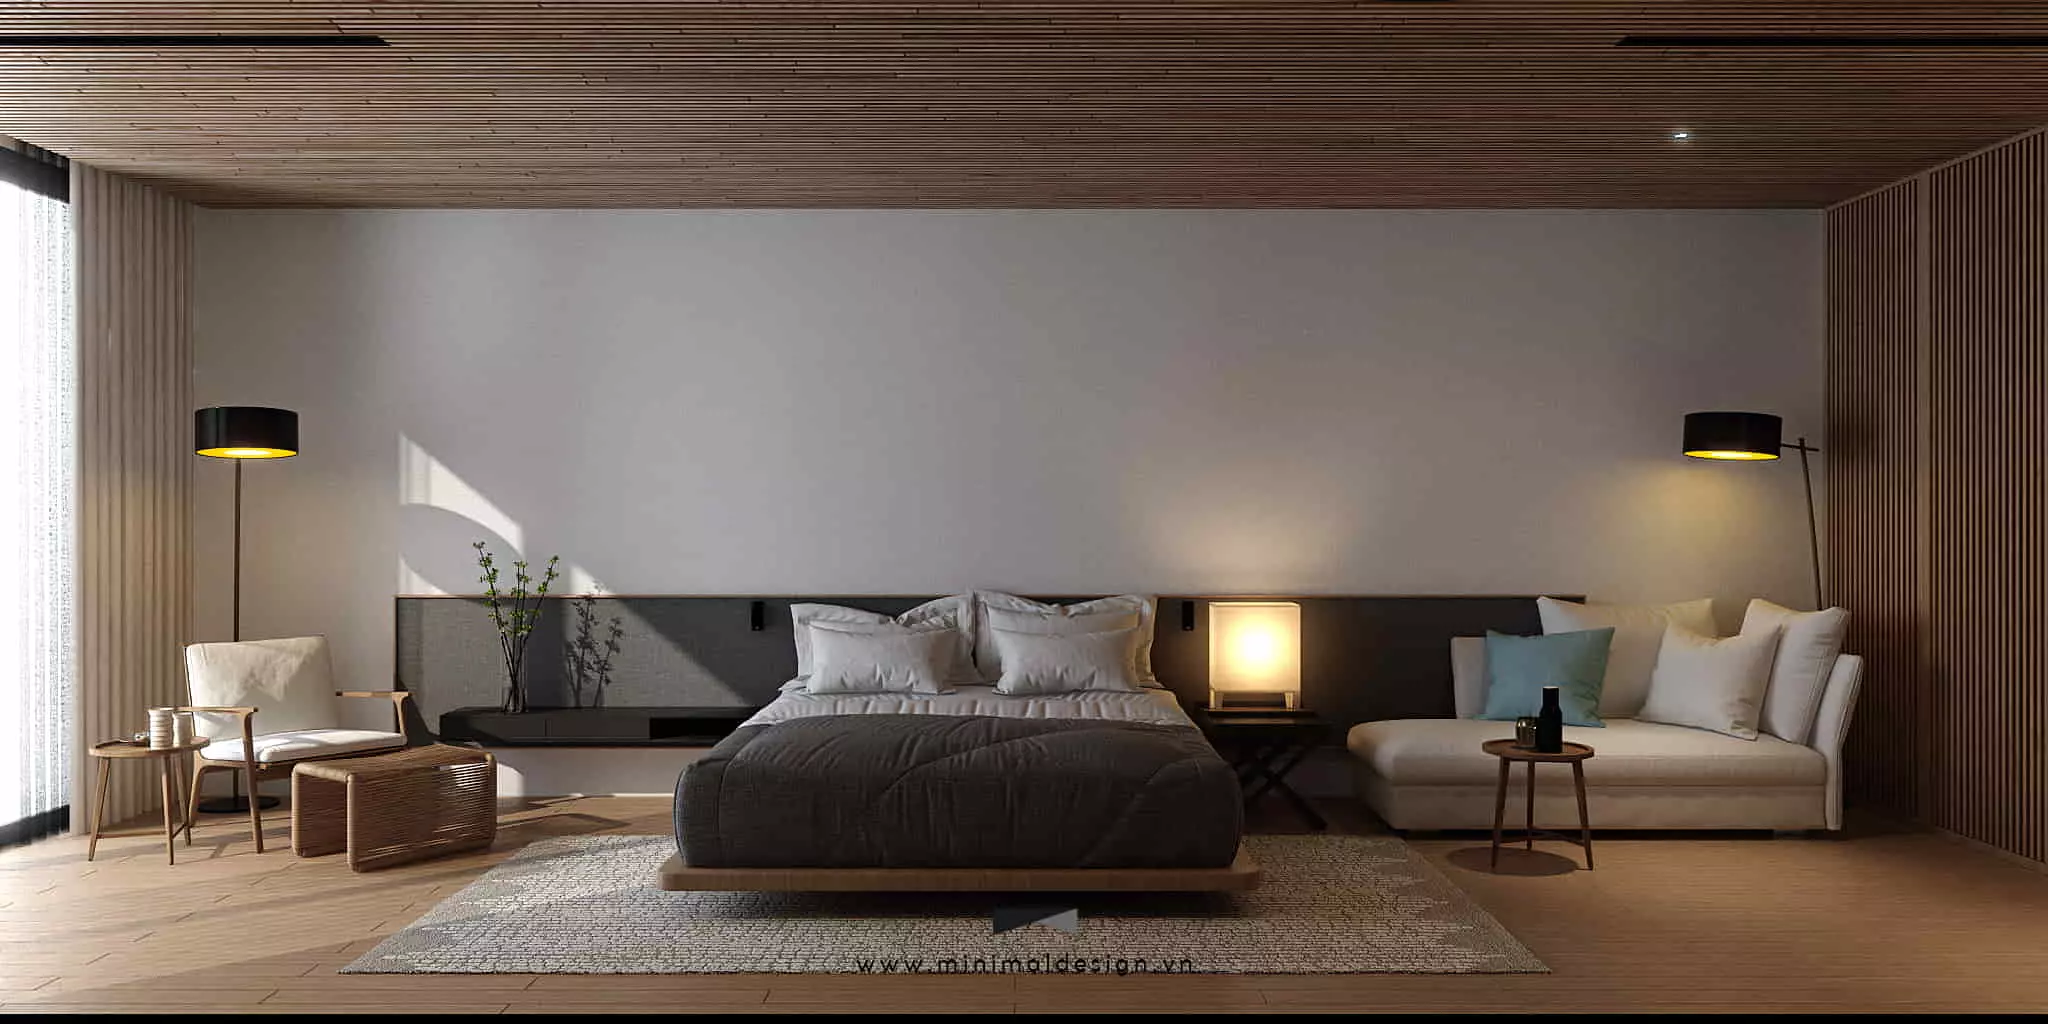 Thiết kế phòng ngủ tối giản đẹp và sang trọng rất được ưa chuộng bởi vẻ đẹp tinh giản, nhẹ nhàng, thông thoáng và đầy tiện nghi.